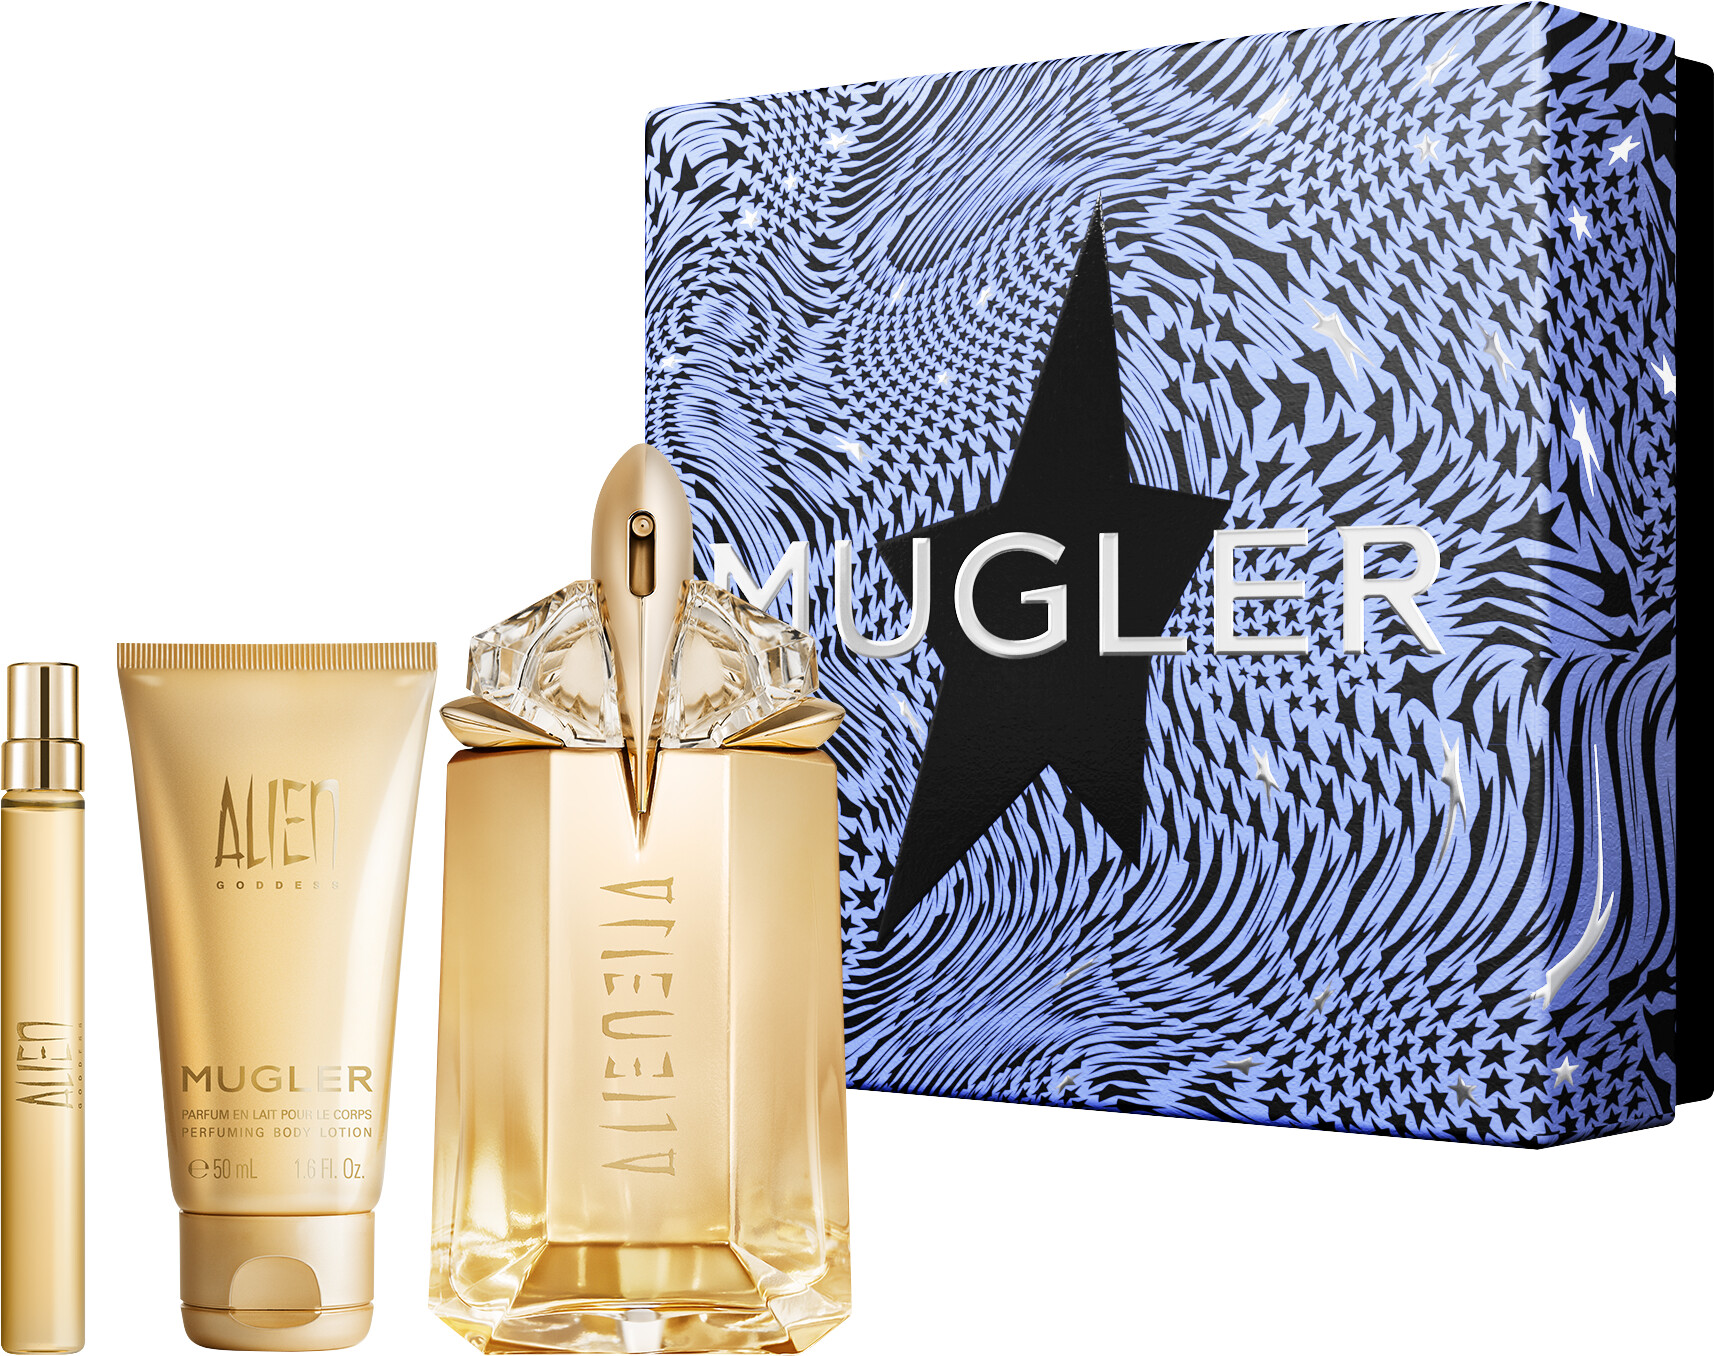 Thierry Mugler Alien Goddess Eau de Parfum Refillable Spray 60ml Gift Set